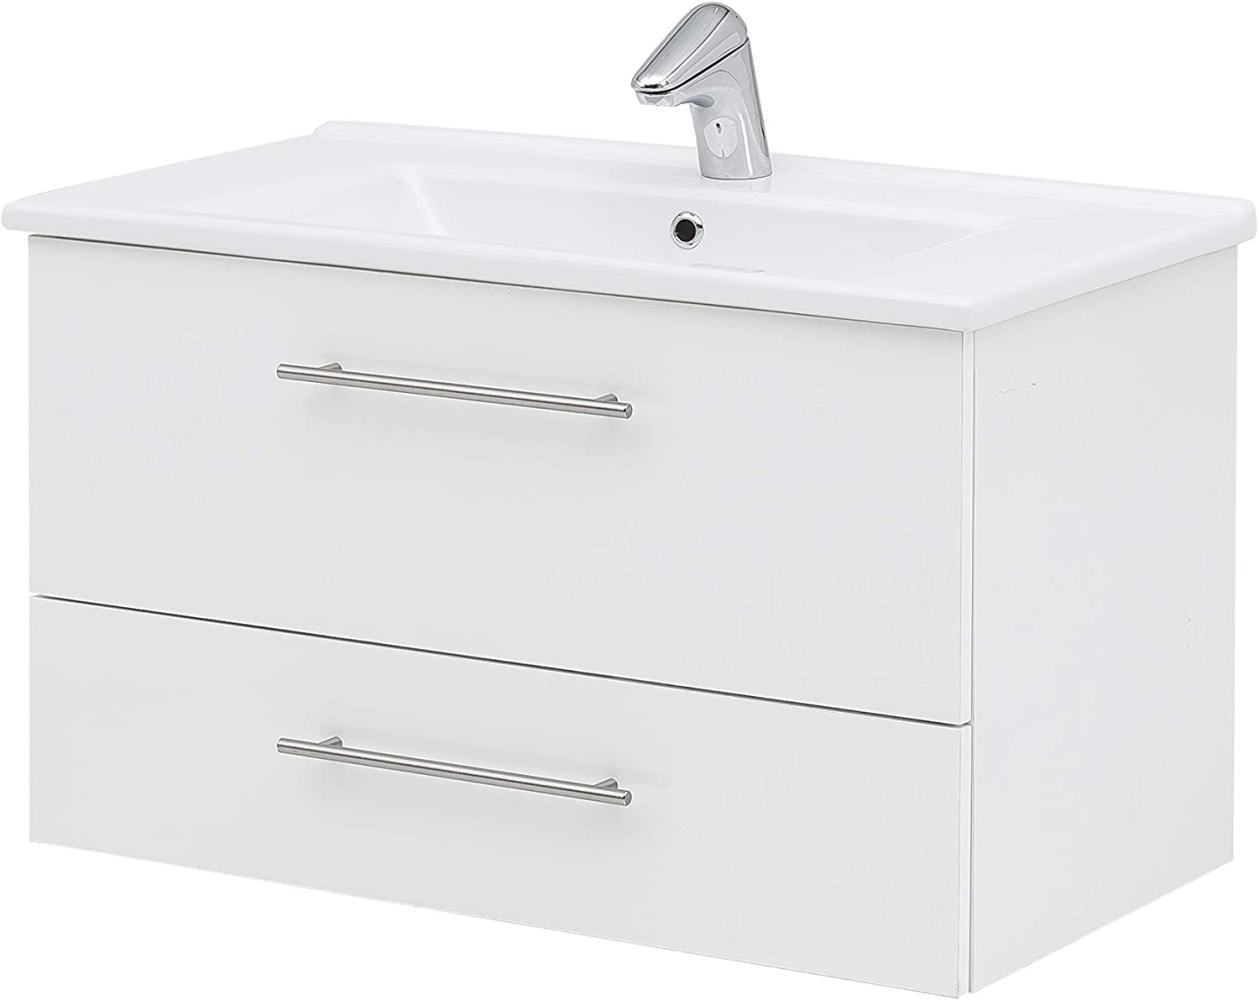 SCHILDMEYER Waschtisch mit Waschbecken Unterschrank Badmöbel weiß 85x52,5x45,5cm Bild 1